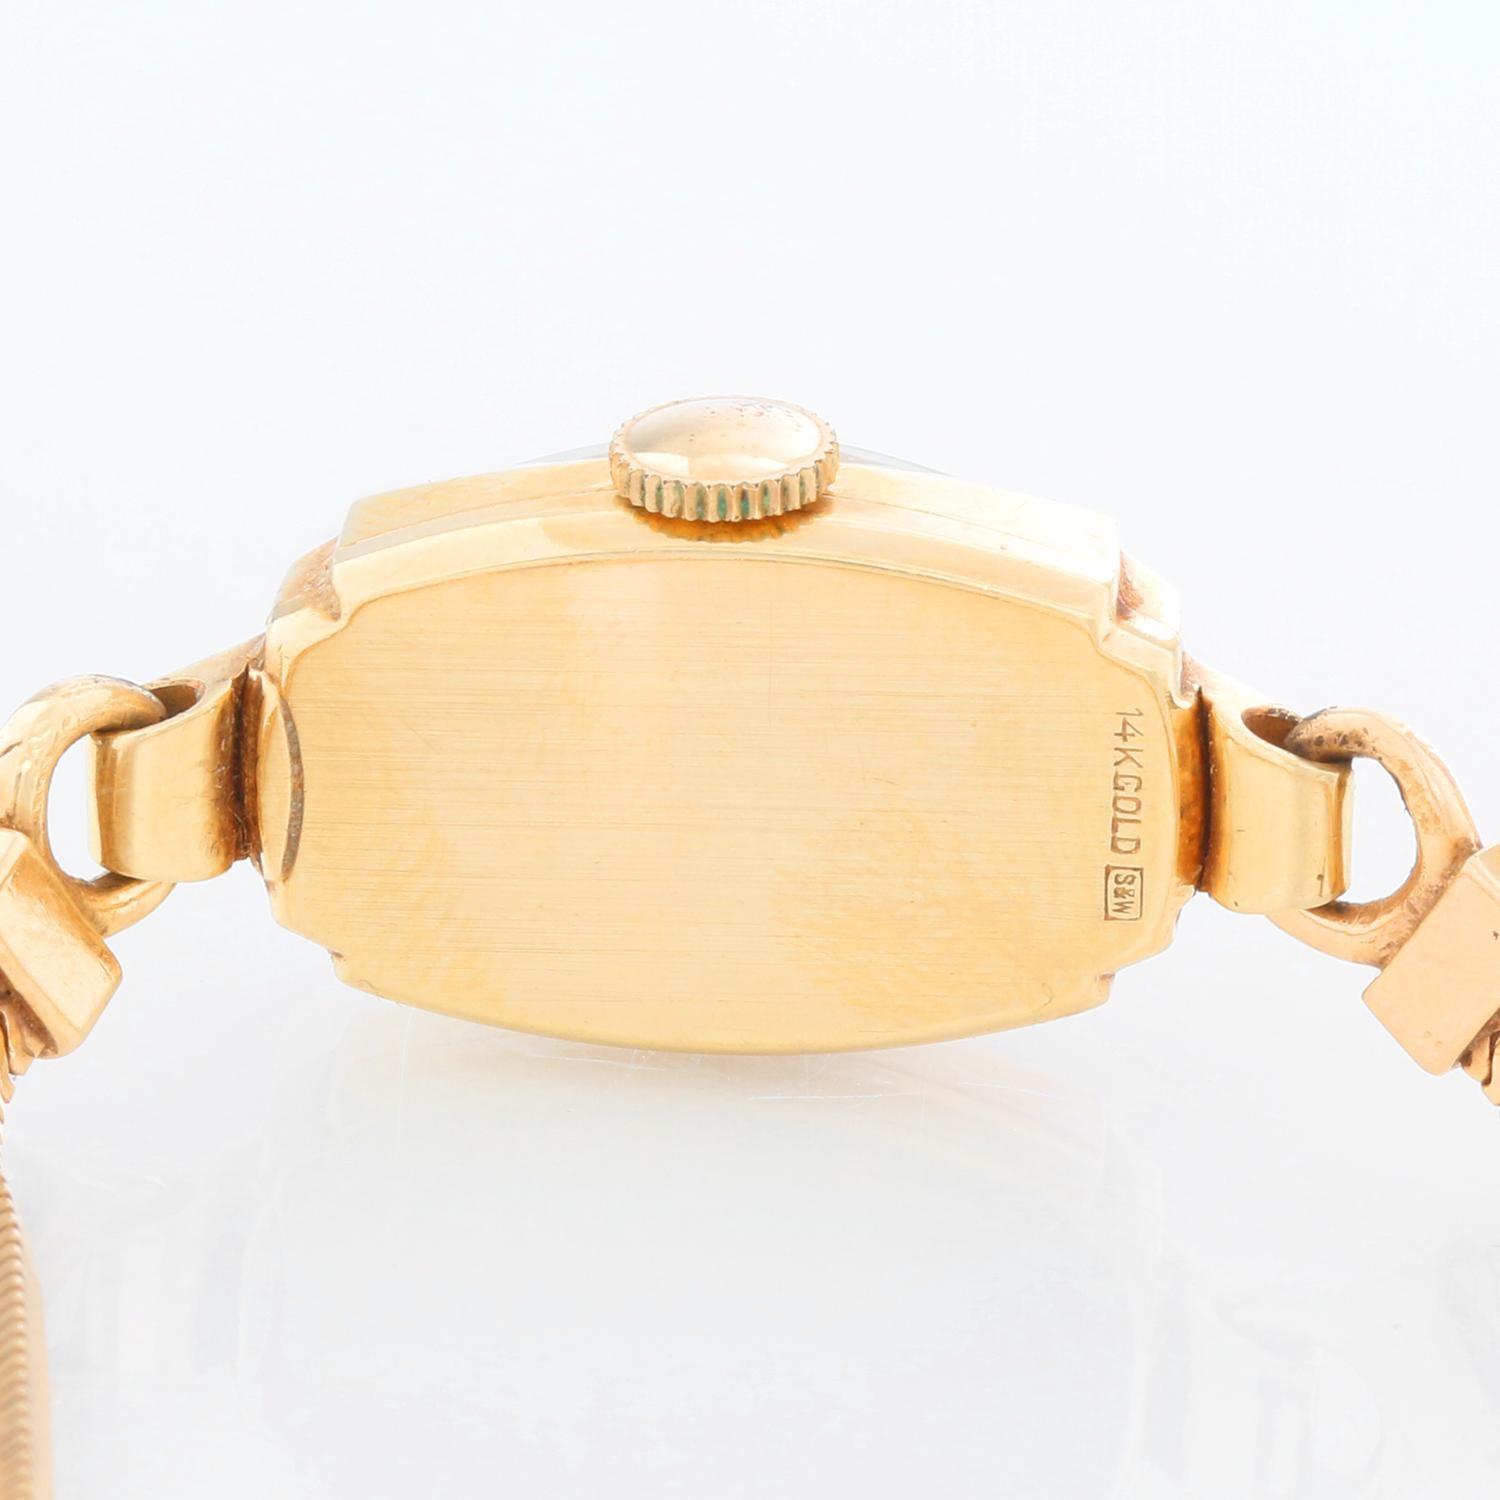 women's gold vintage watch